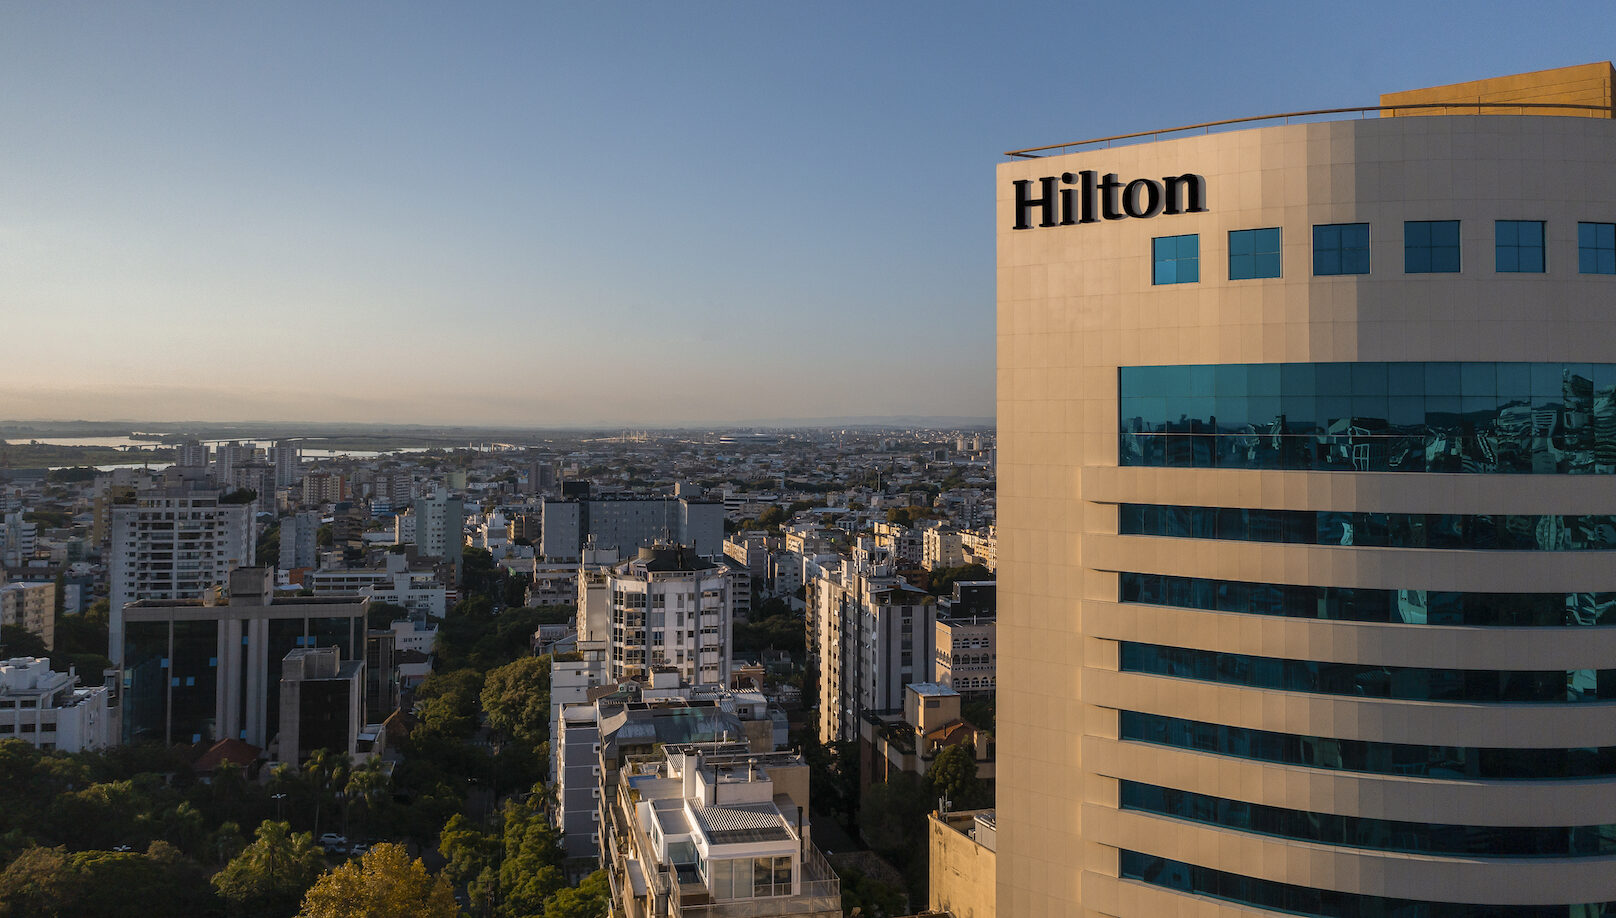 Hilton instala a sua marca na fachada do hotel Hilton Porto Alegre no Moinhos de Vento